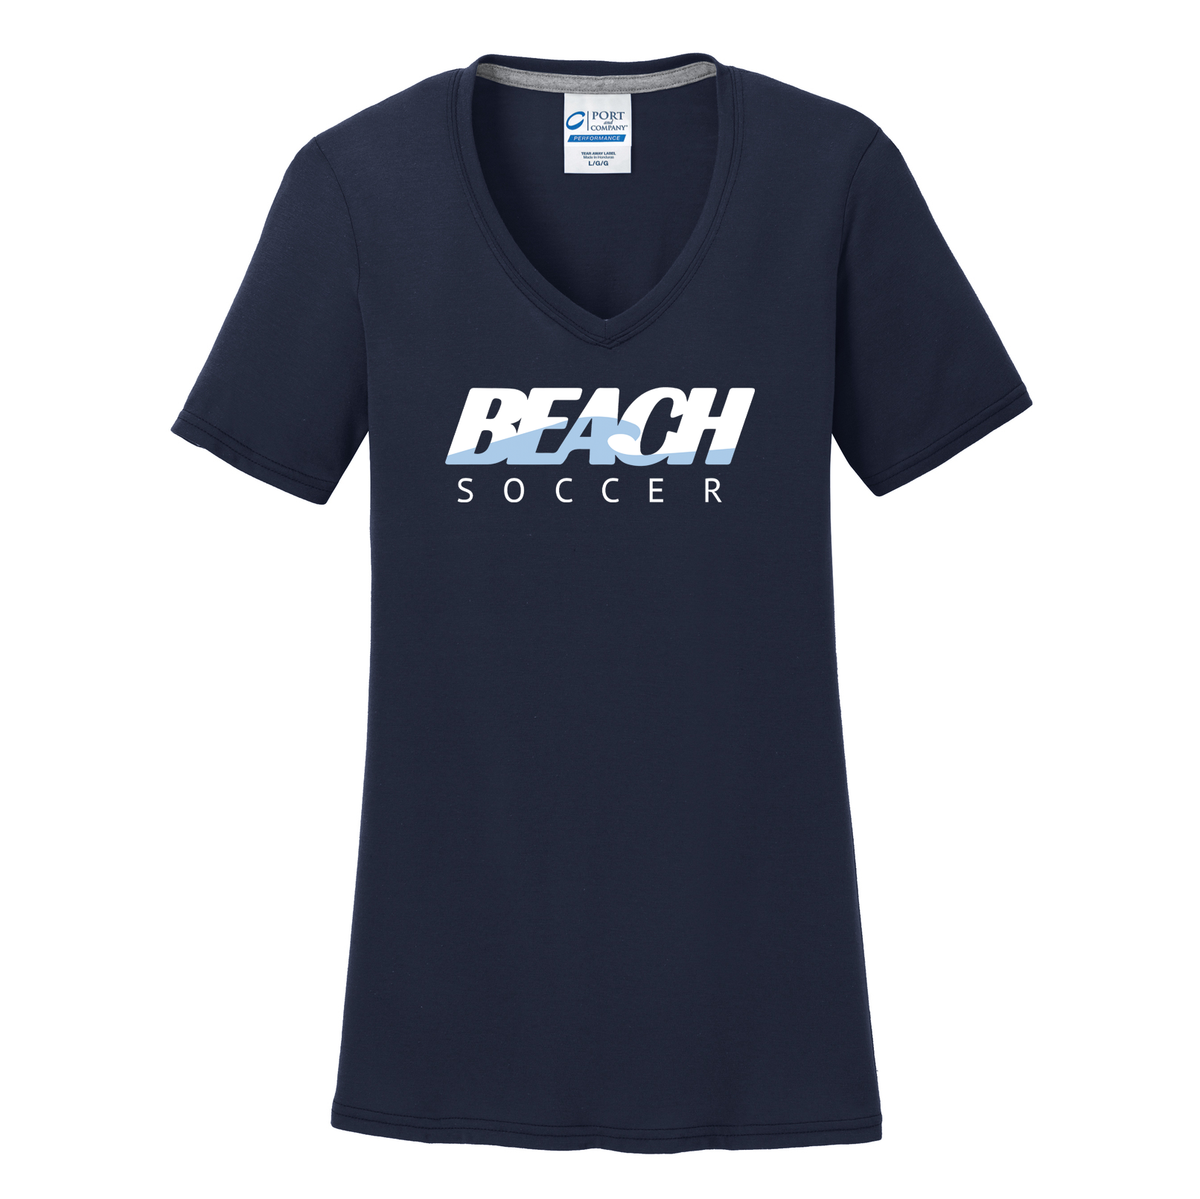 Long Beach Soccer Women's T-Shirt